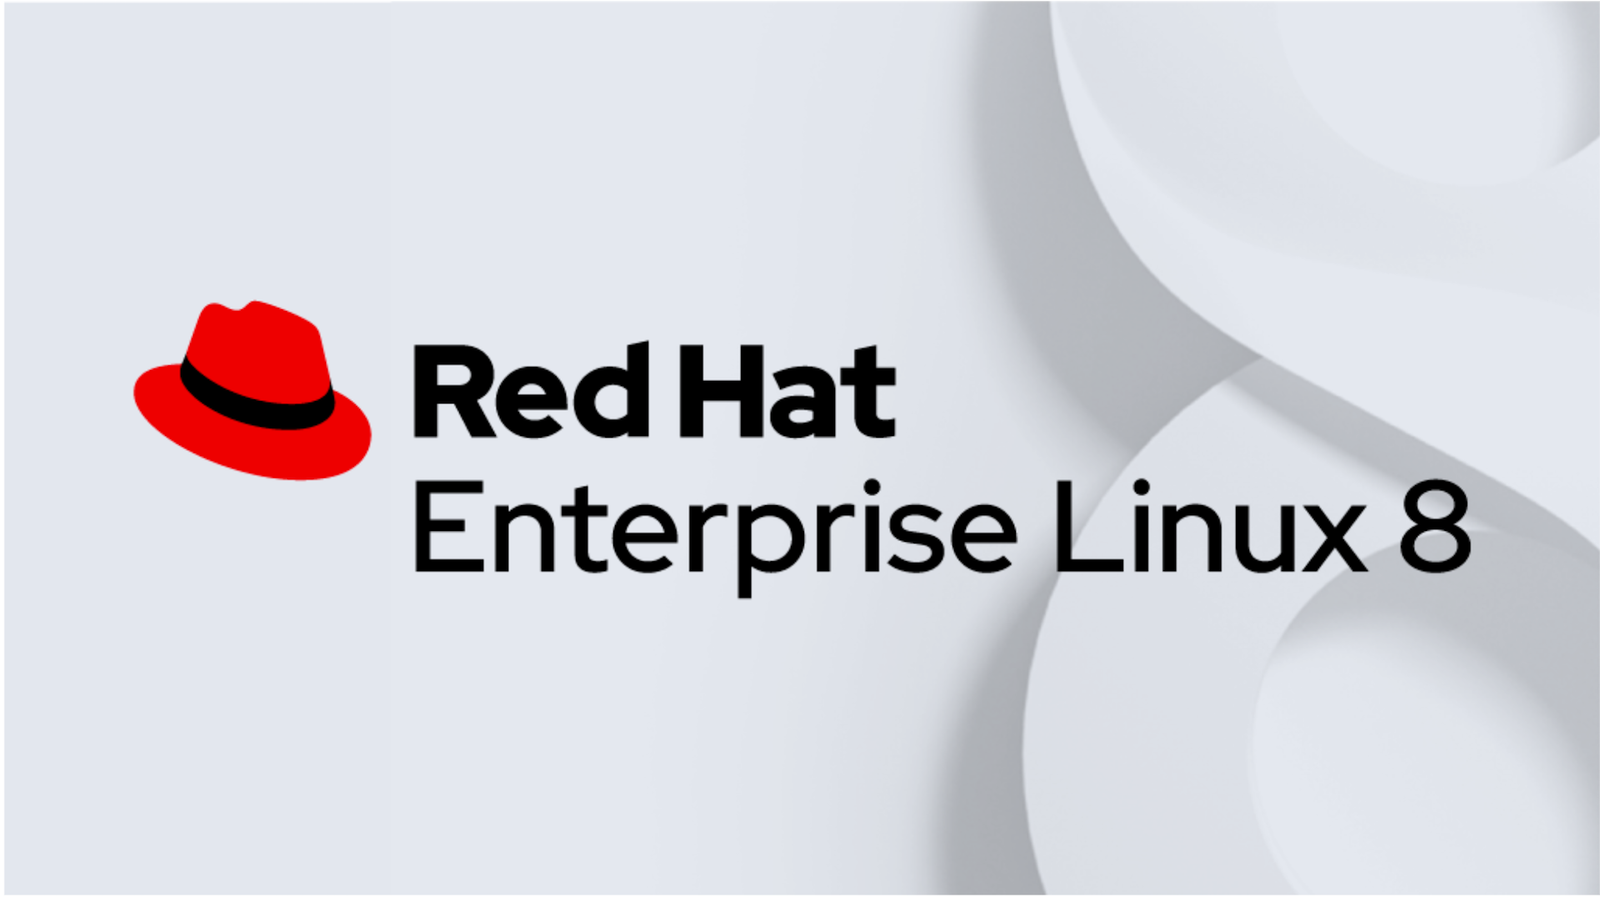 Red Hat Enterprise Linux (RHEL) Server 8.1 Free Download